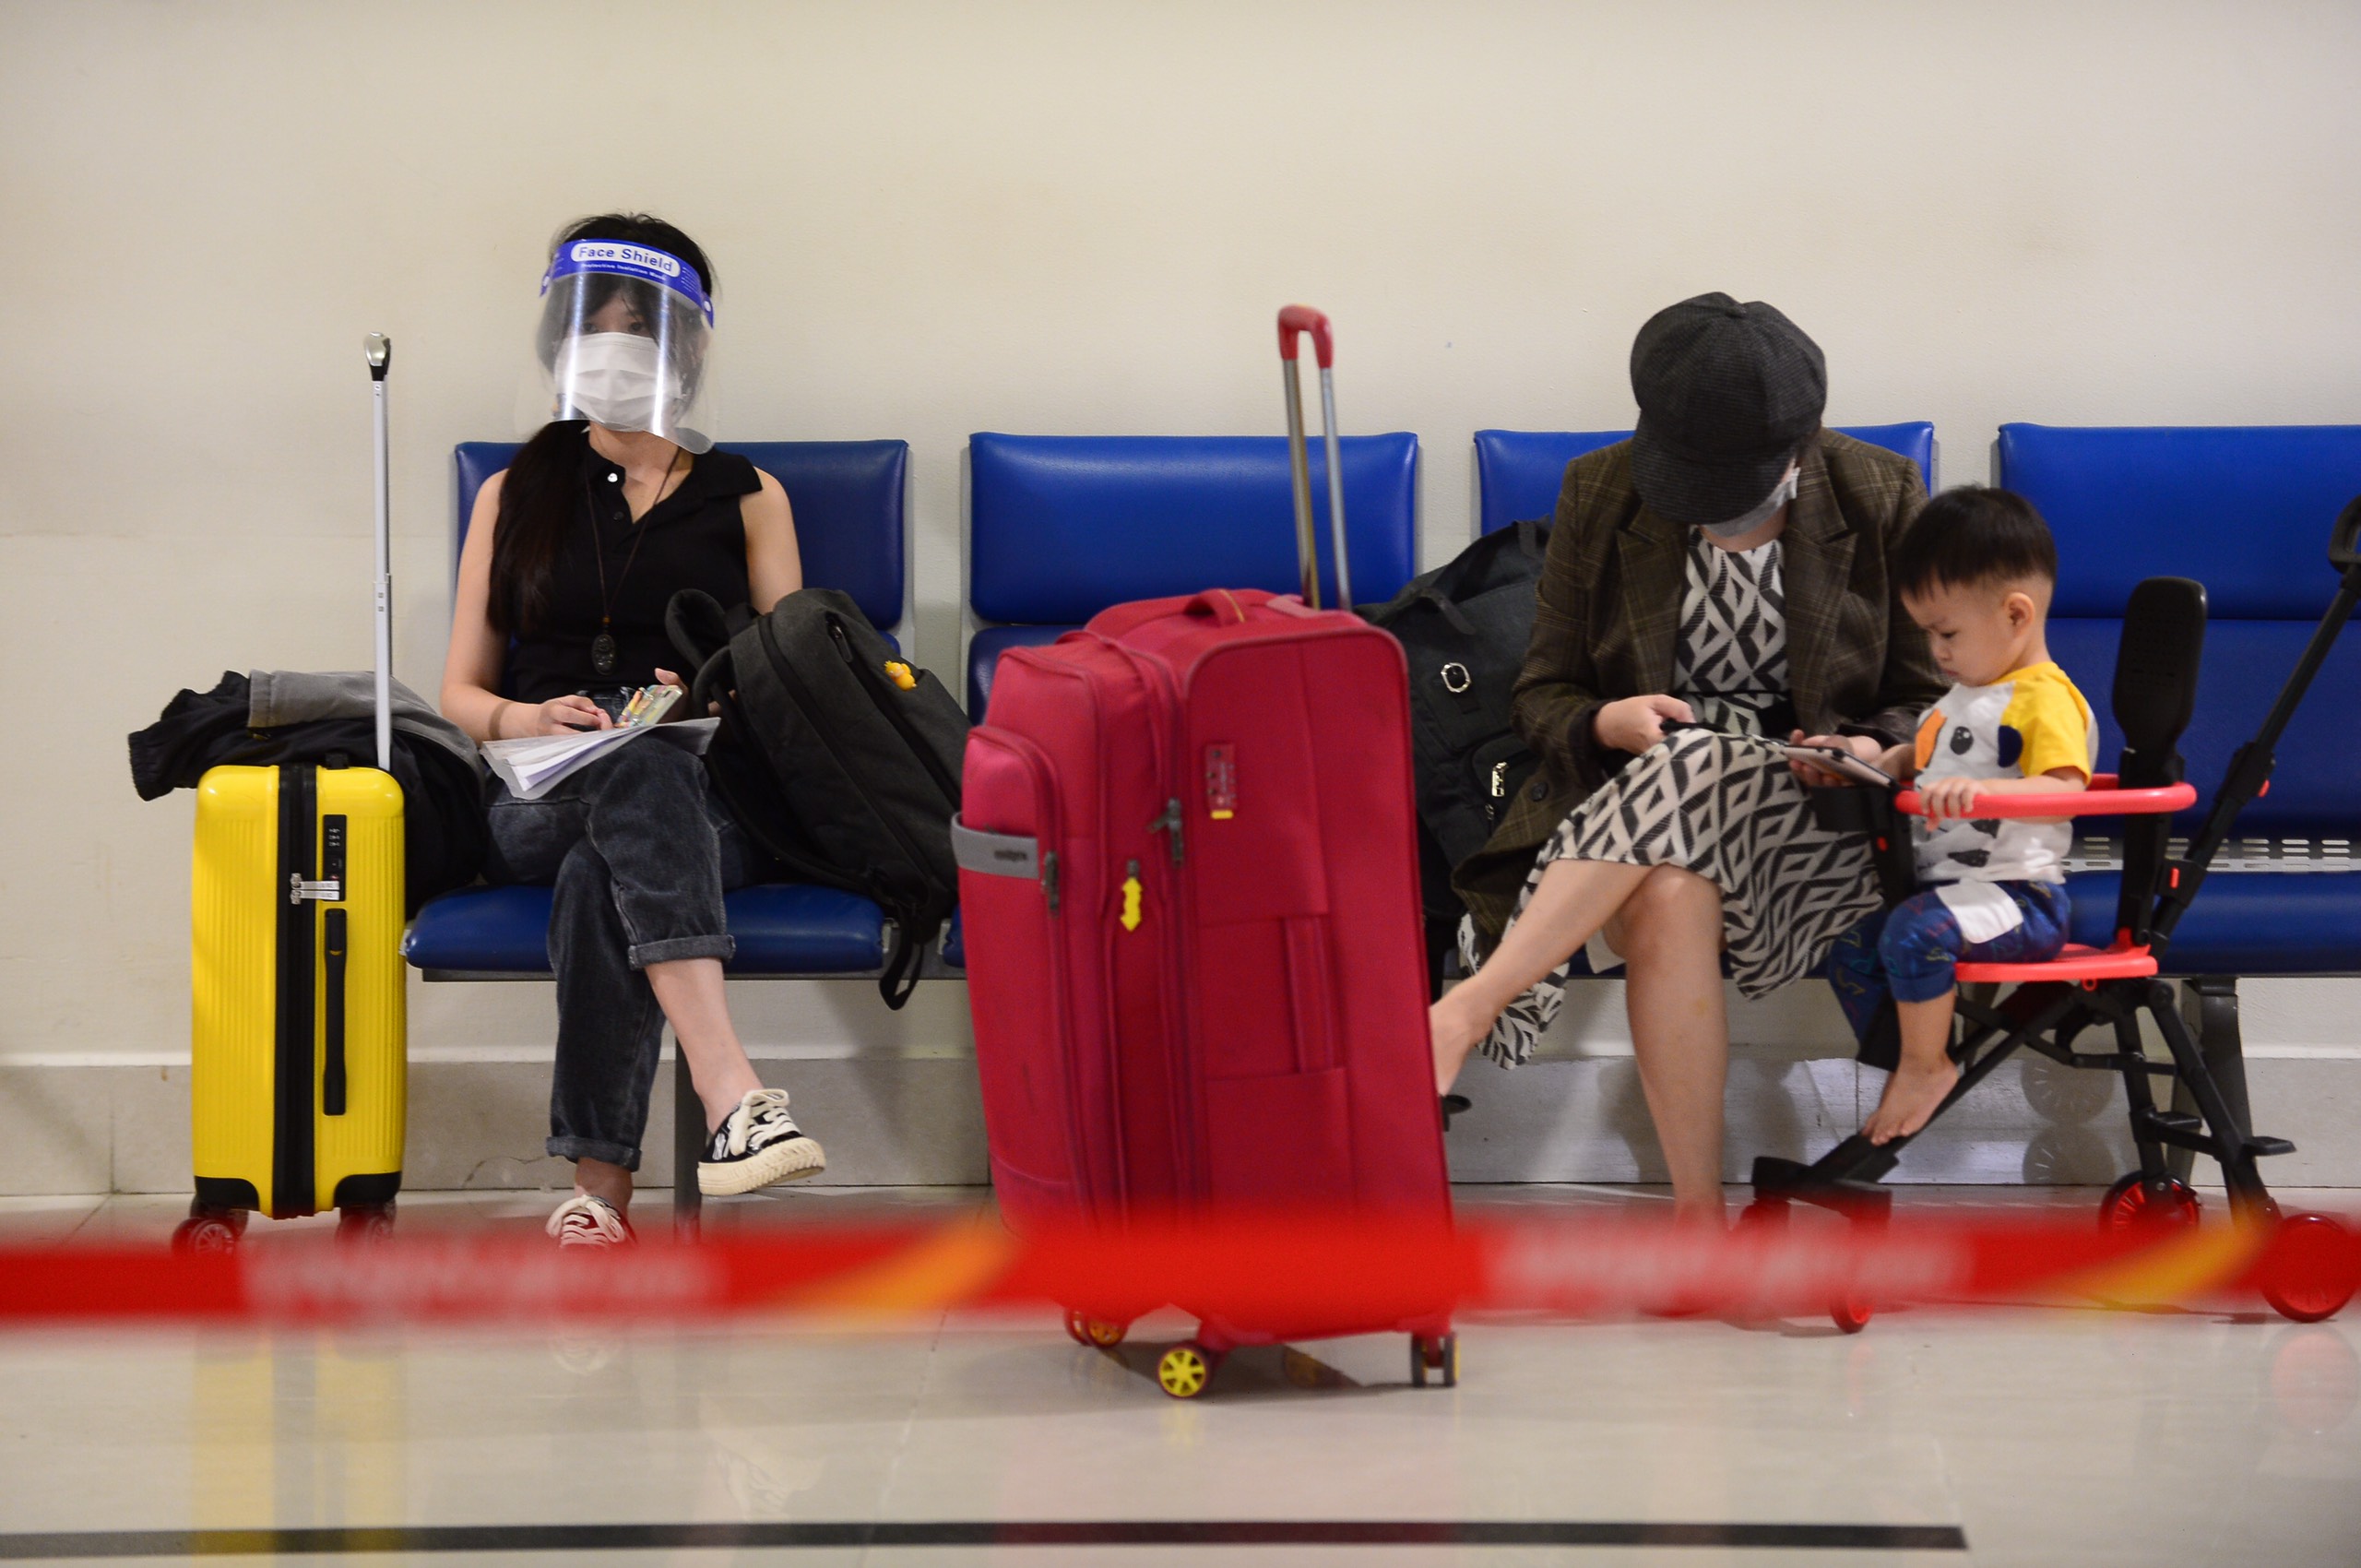 Đà Nẵng từ chối chuyến bay chở khách từ TP.HCM, khách mòn mỏi chờ ở sân bay - Ảnh 3.